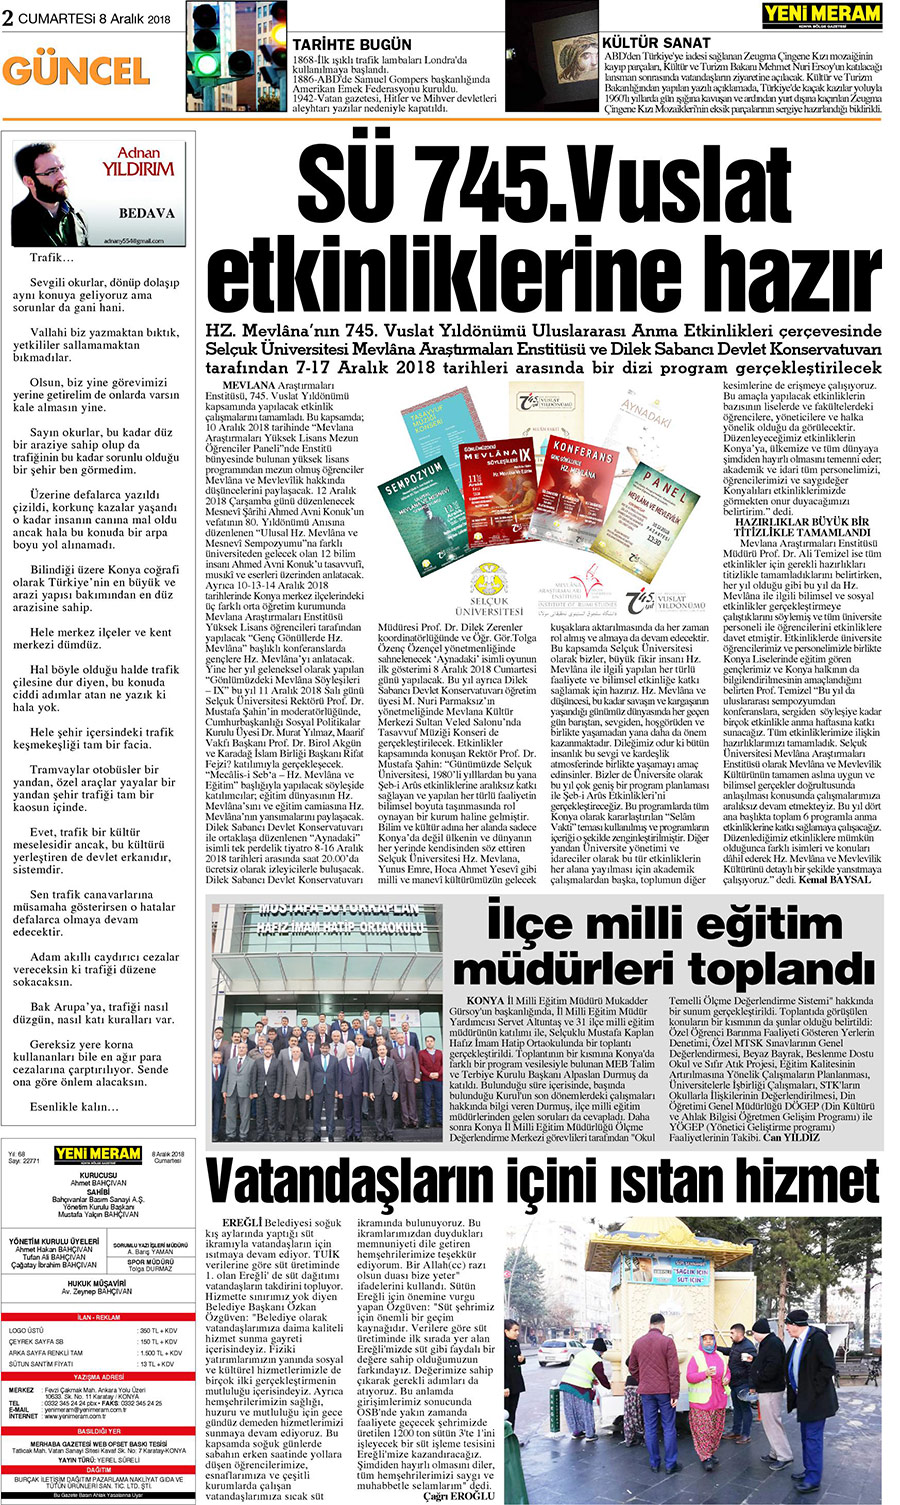 8 Aralık 2018 Yeni Meram Gazetesi